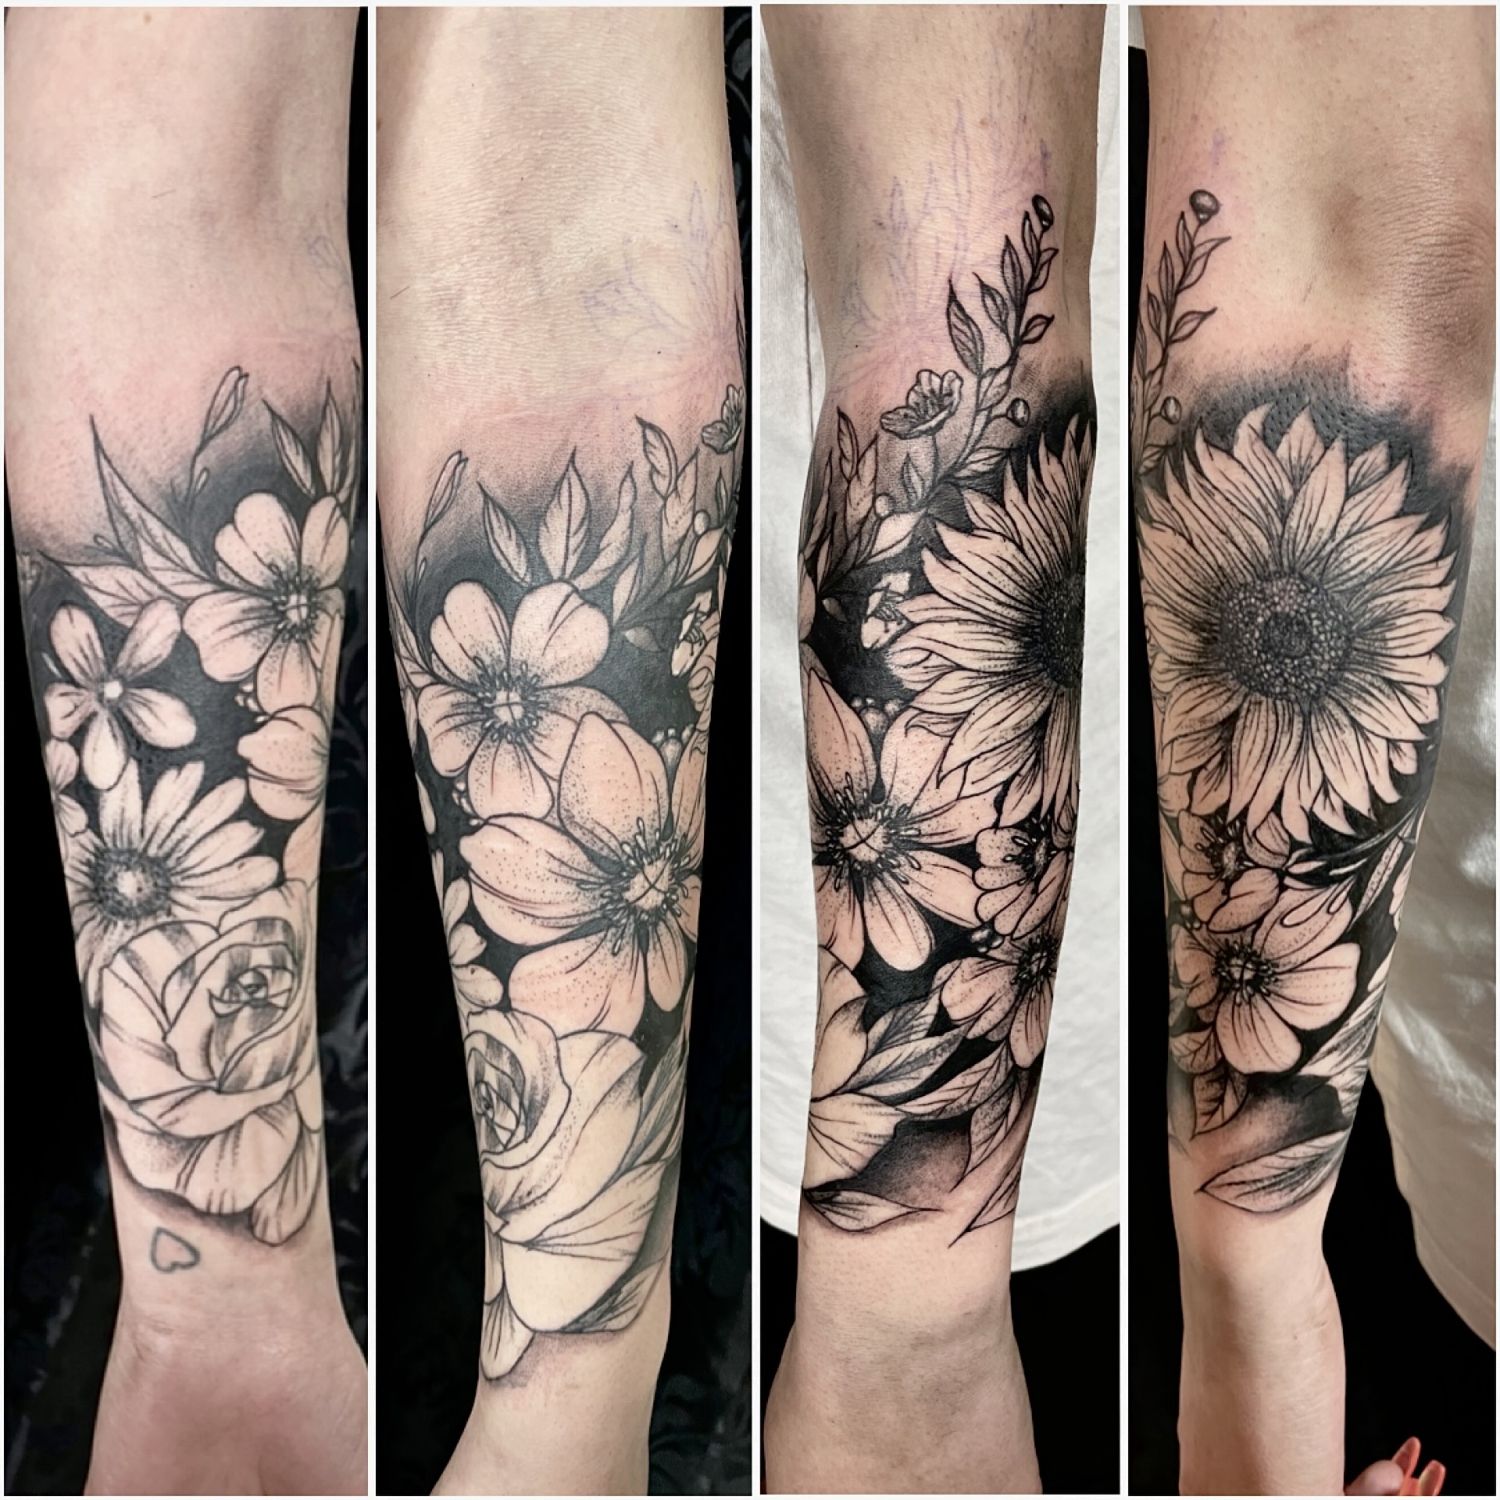 Alkar tetoválás, Csukló tetoválás, Fekete fehér tetoválás, Realisztikus tetoválás, Szimbólumok, Virág tetoválás